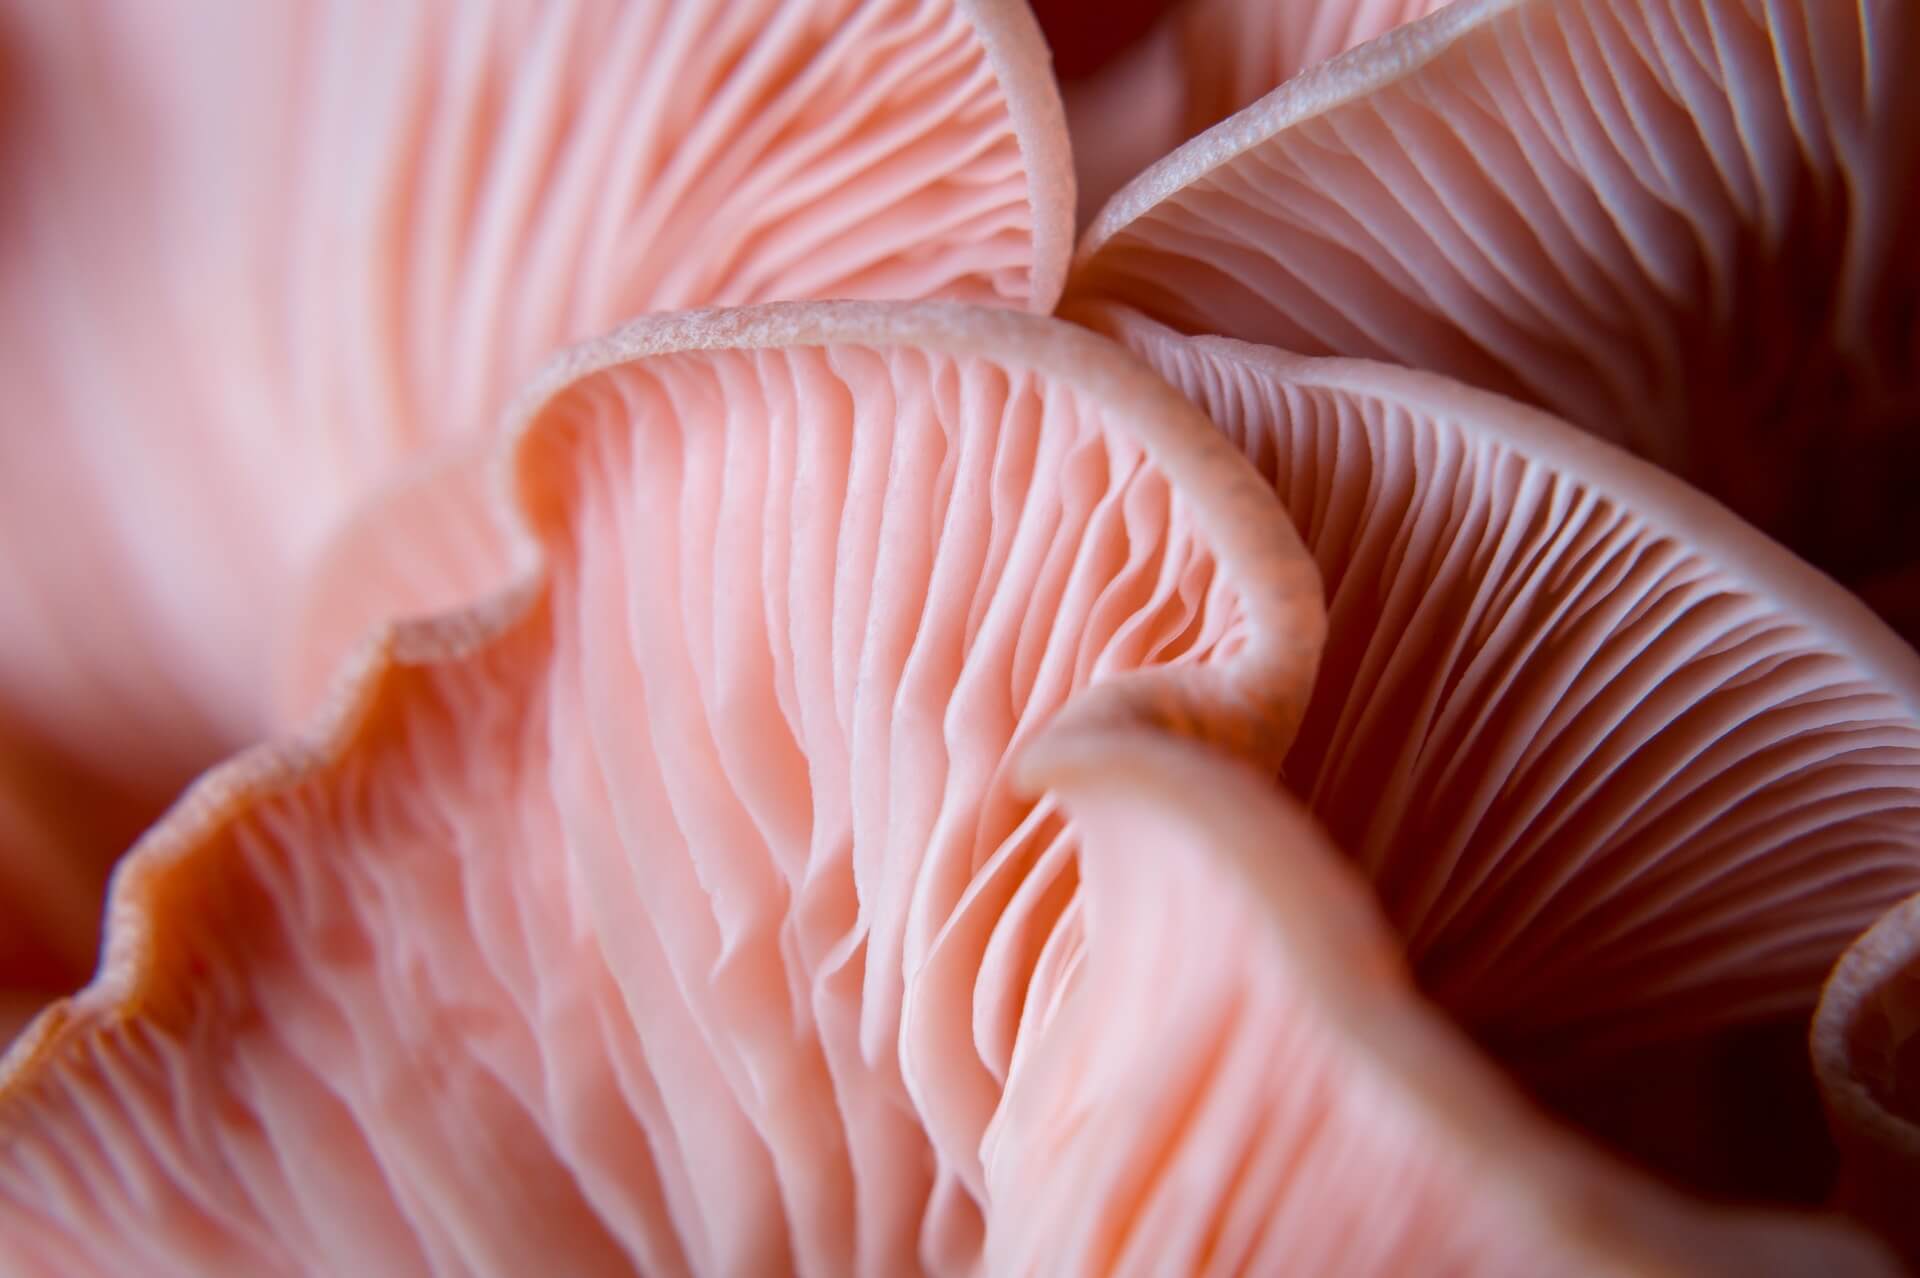 pink mushroom zoomed in